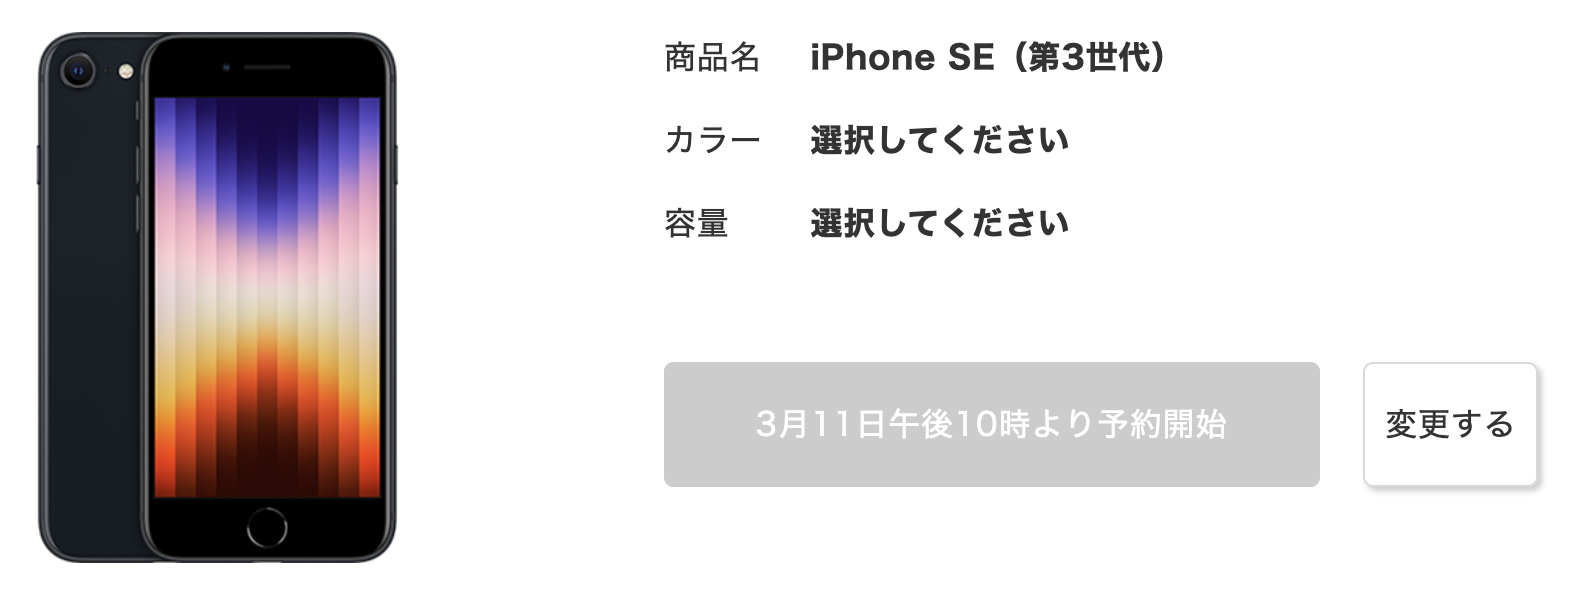 ドコモのiPhone SE3予約